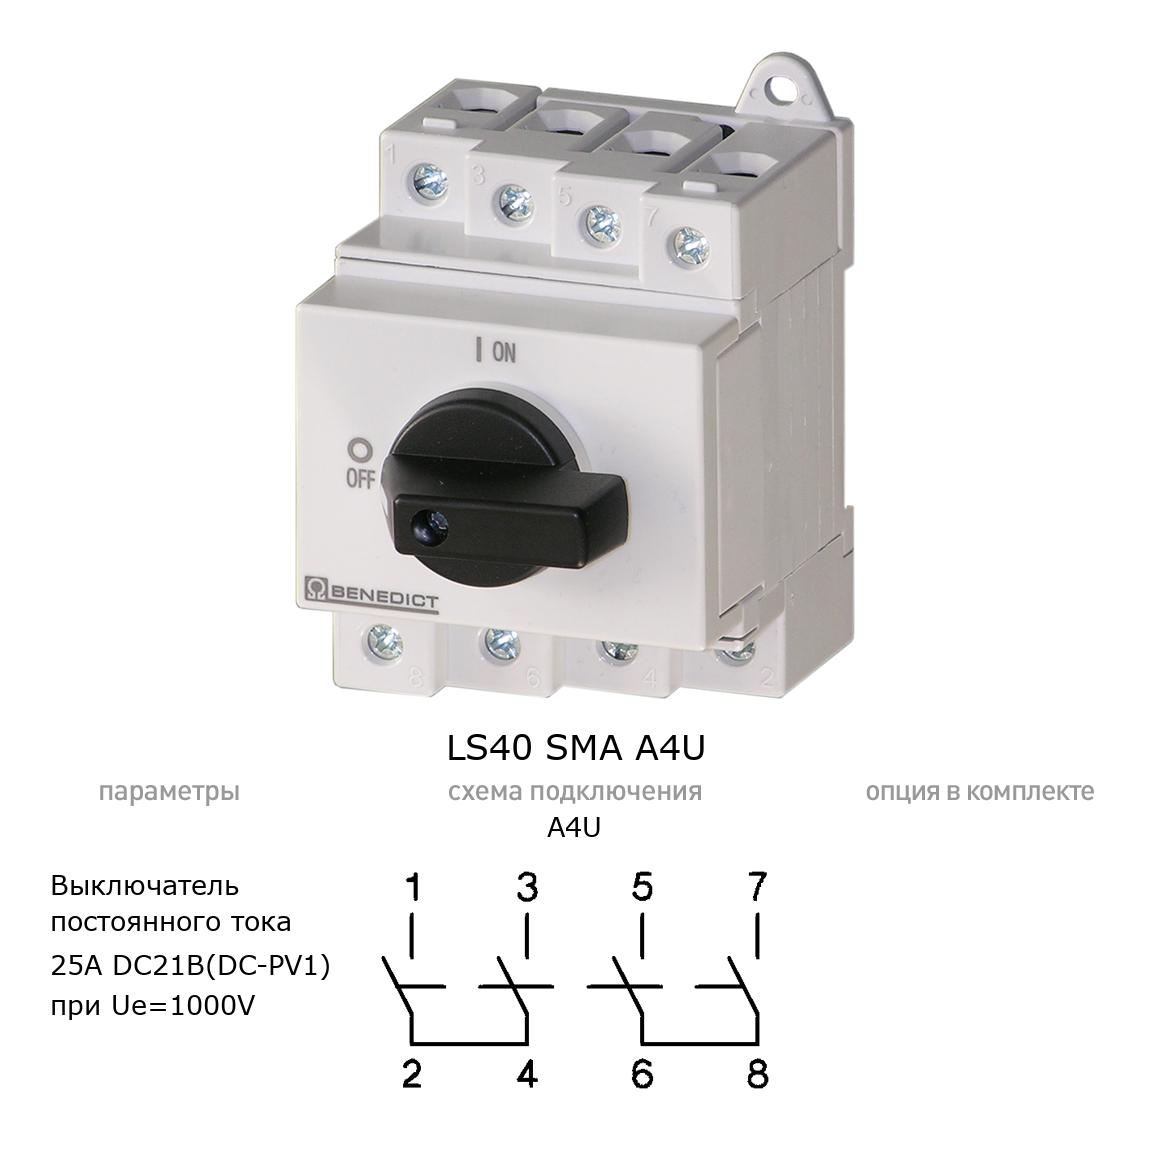 Кулачковый переключатель для постоянного тока (DC) LS40 SMA A4U BENEDICT